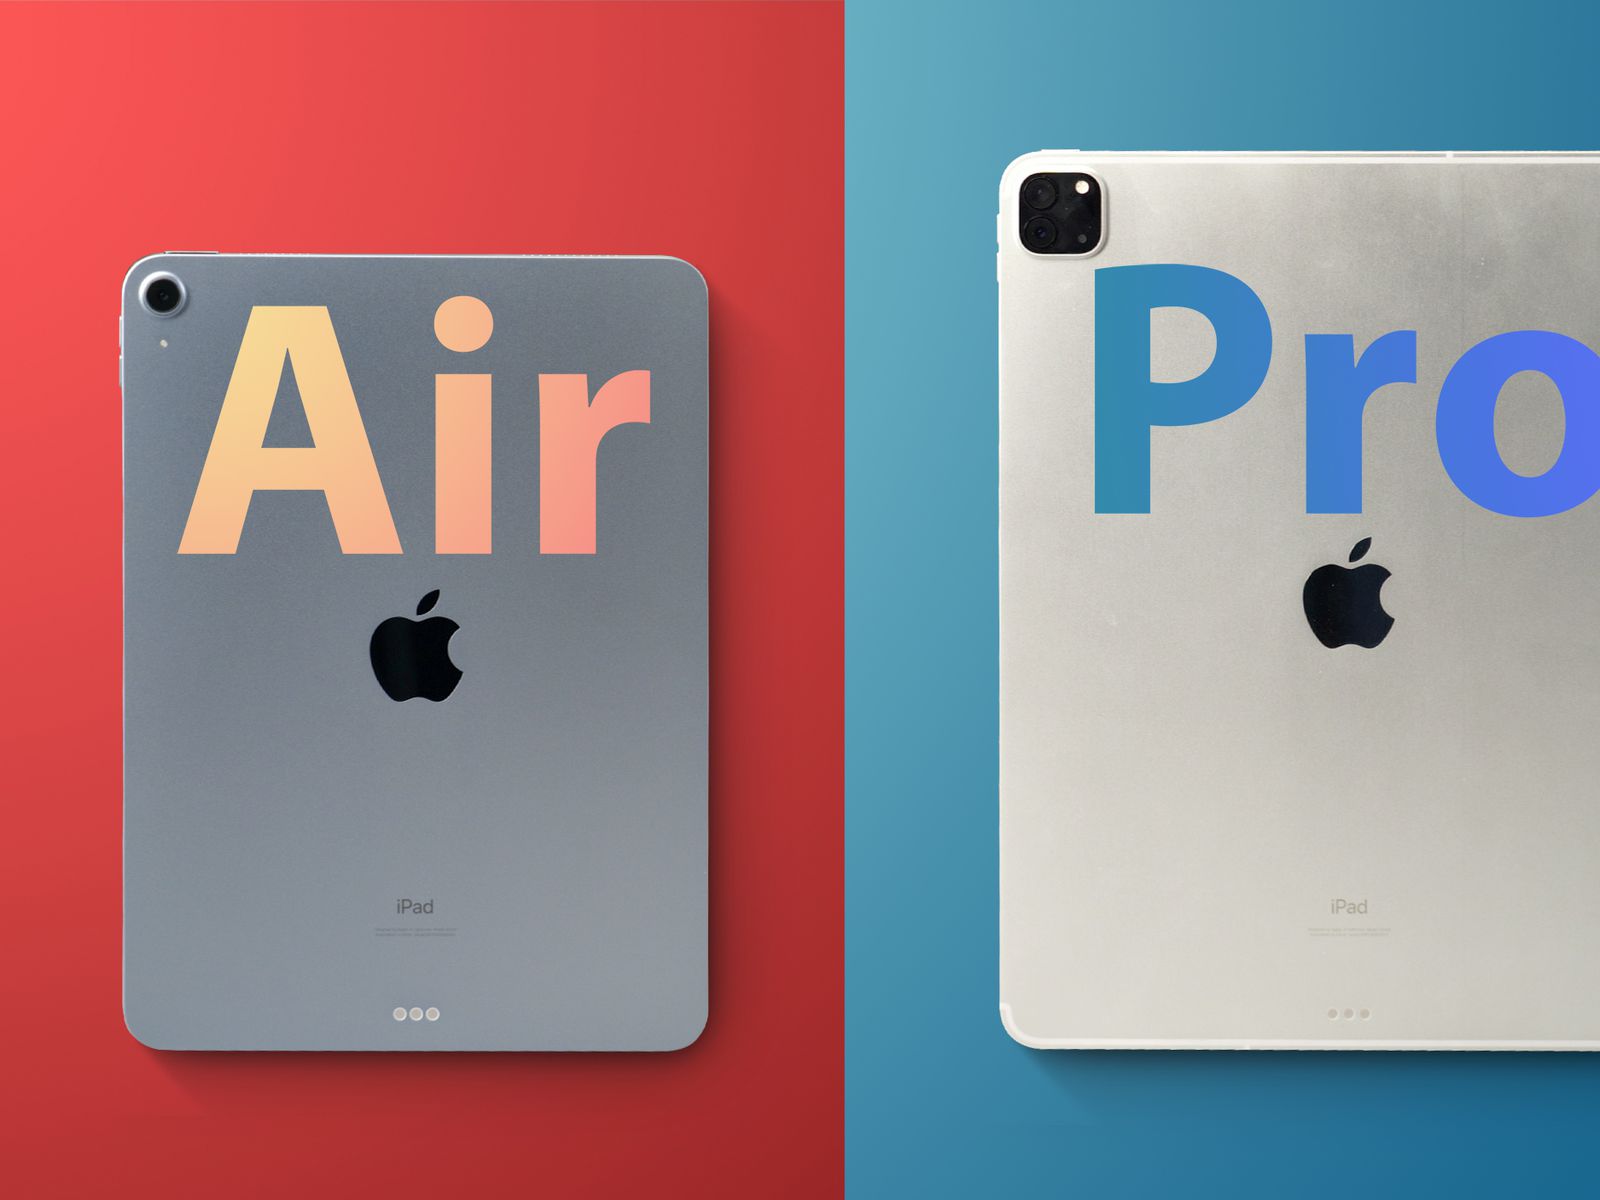 mobilya eksiklik tatlı  2020 iPad Air vs. iPad Pro: Hands-On Comparison - MacRumors